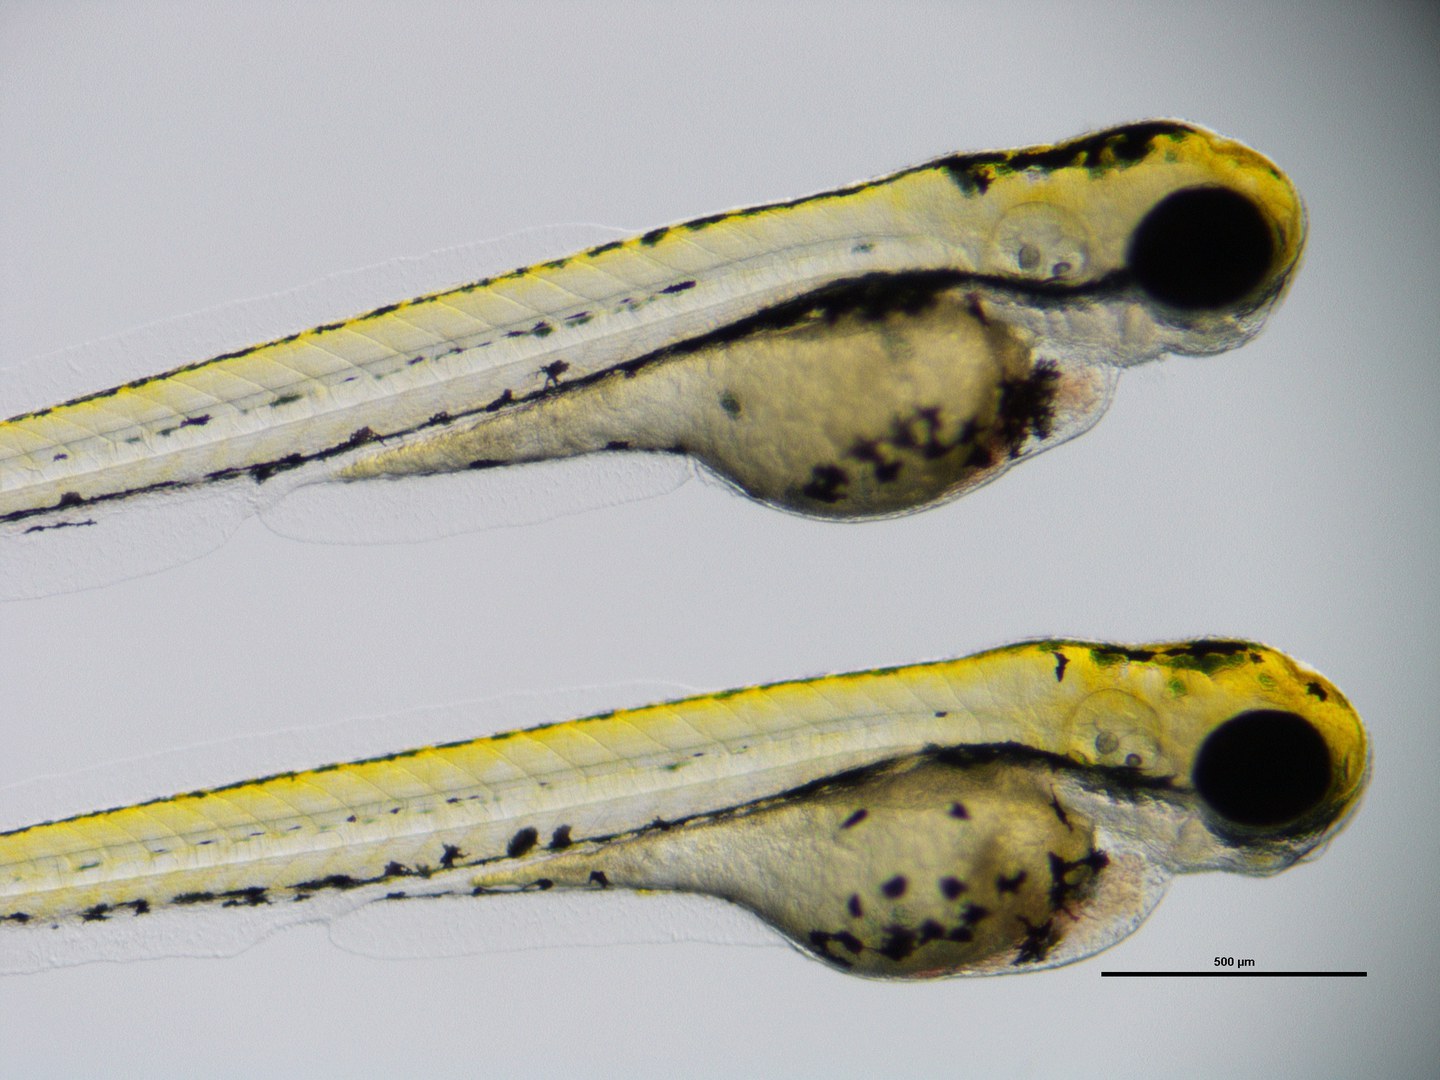 Zebrafisch-Larven - Zwei lebendige Zebrafischlarven, in denen das Fisch-SHROOM4-Gen ausgeschaltet wurde. Man erkennt entsprechende Fehlbildungen (kleine Augen, kleine Köpfe, Anomalien des Darms, Hinweise auf Herzfehler).